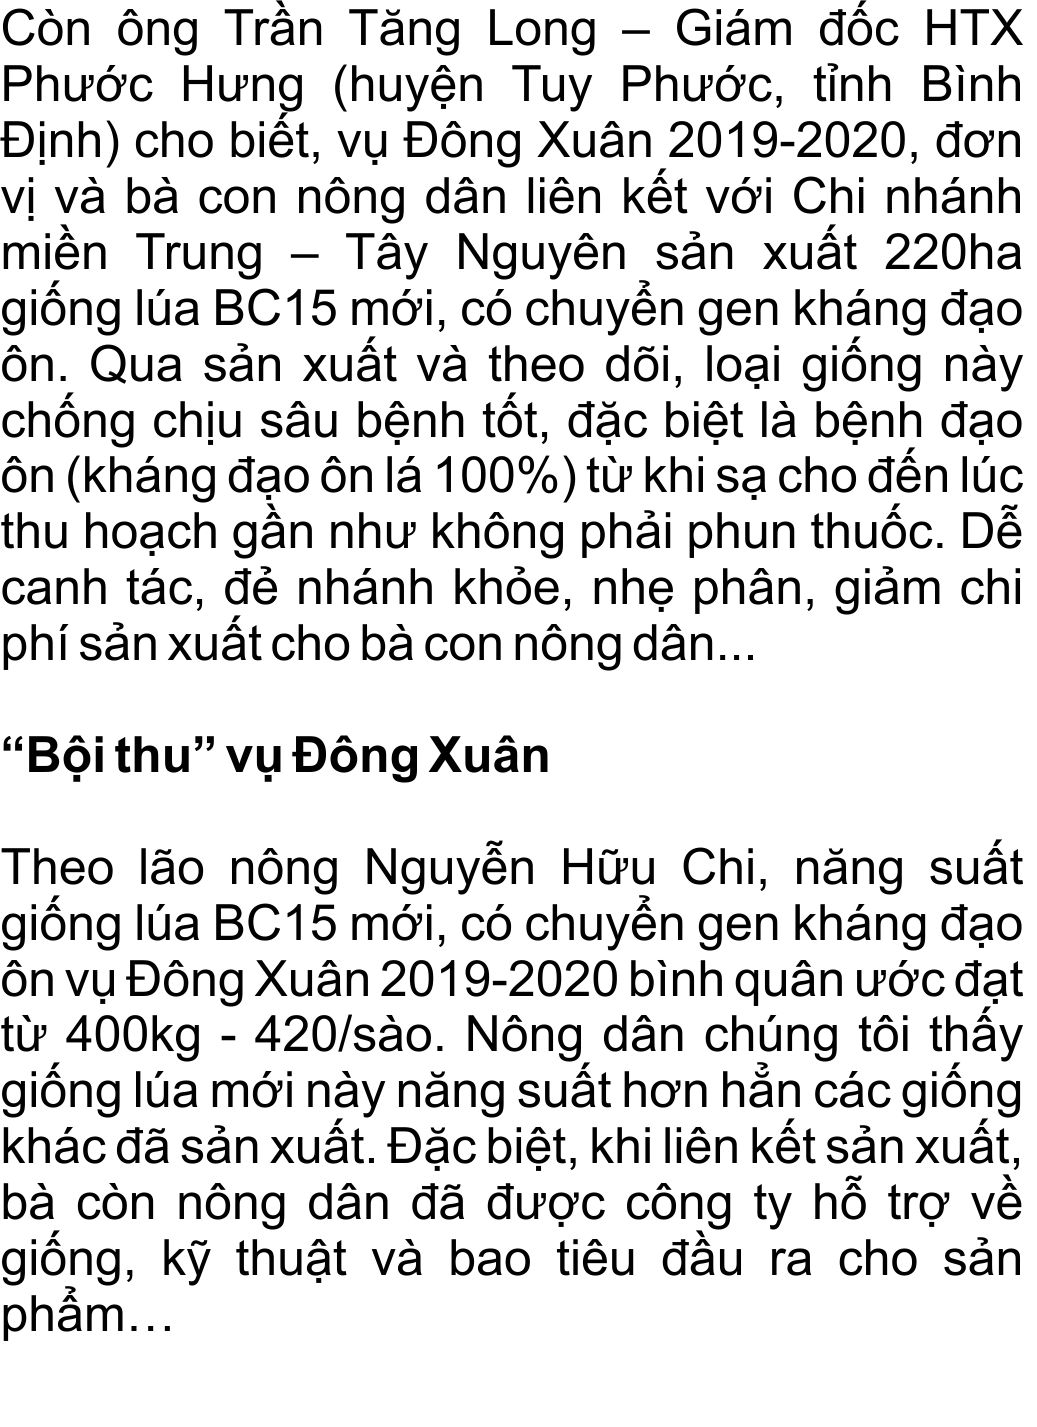 giong-lua-bc15-khang-dao-on-(13).jpg